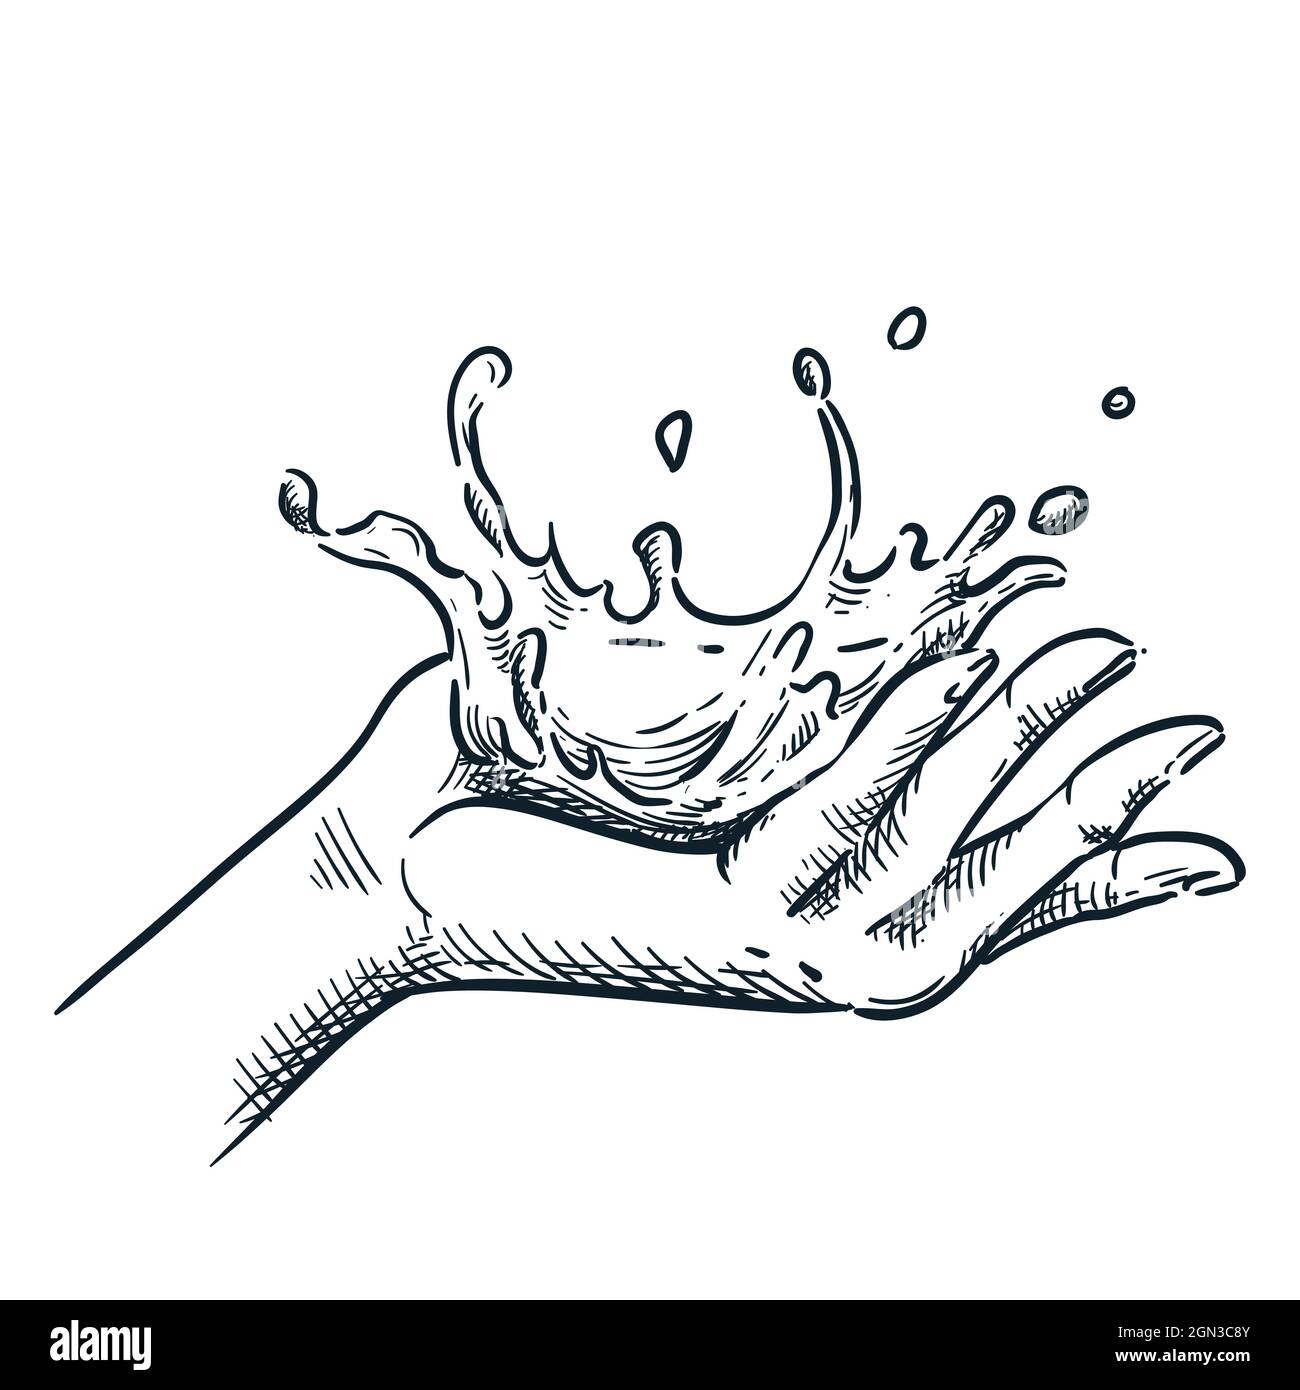 Sauberes Wasser auf die menschliche Hand spritzen. Vektorgrafik mit handgezeichneter Skizze. Design-Element für Hautpflege und Spa-Verfahren. Stock Vektor